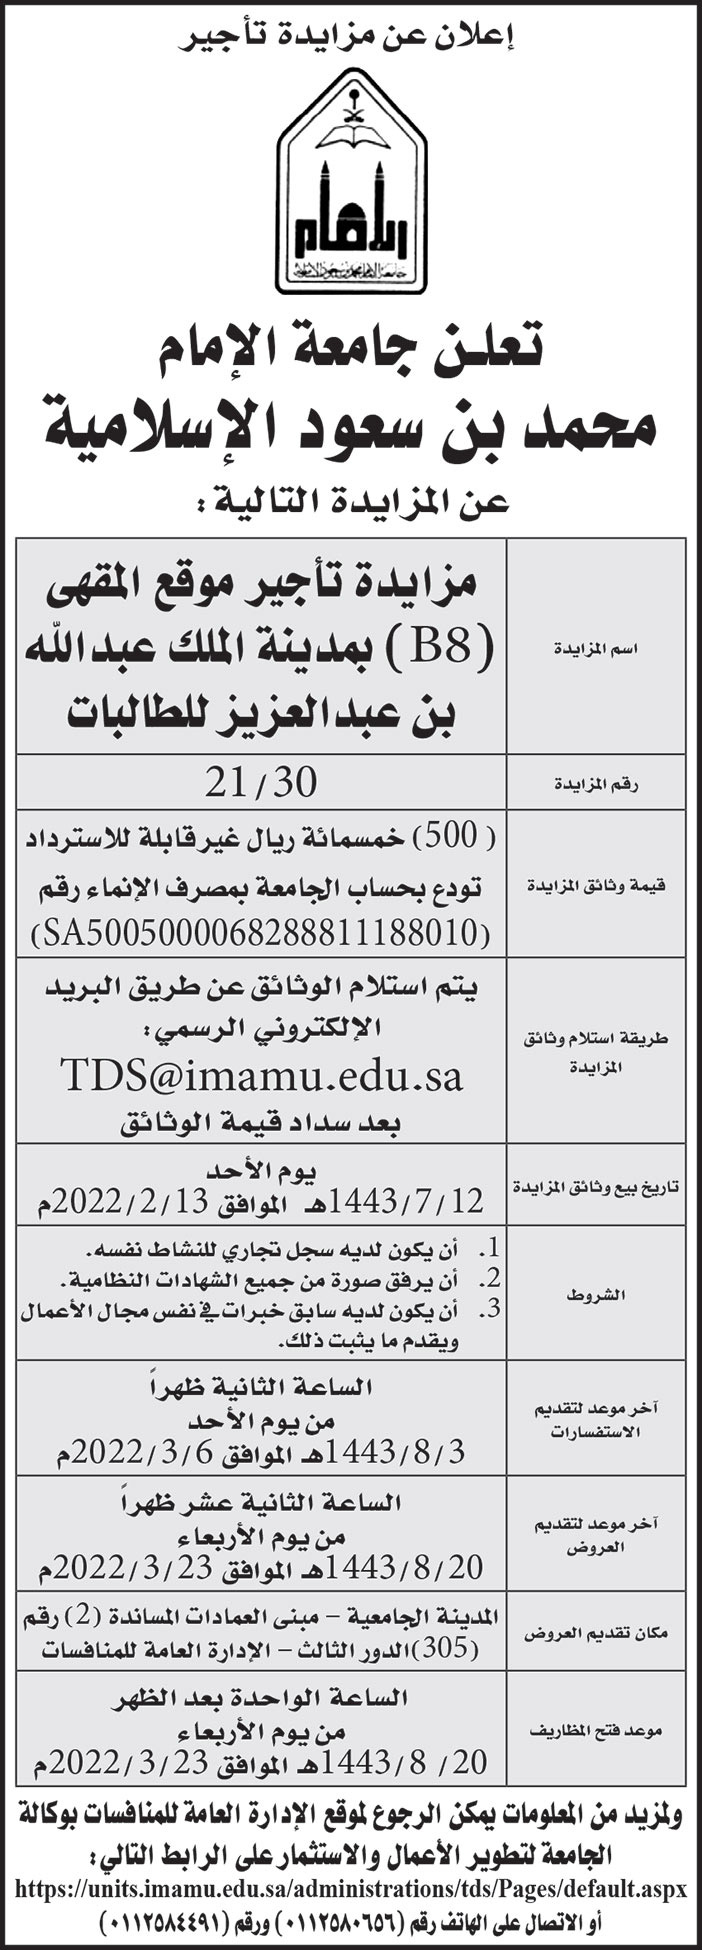 جامعة الإمام محمد بن سعود الإسلامية تطرح مزايدة لتأجير موقع المقهى (B8) بمدينة الملك عبدالله بن عبدالعزيز للطالبات 